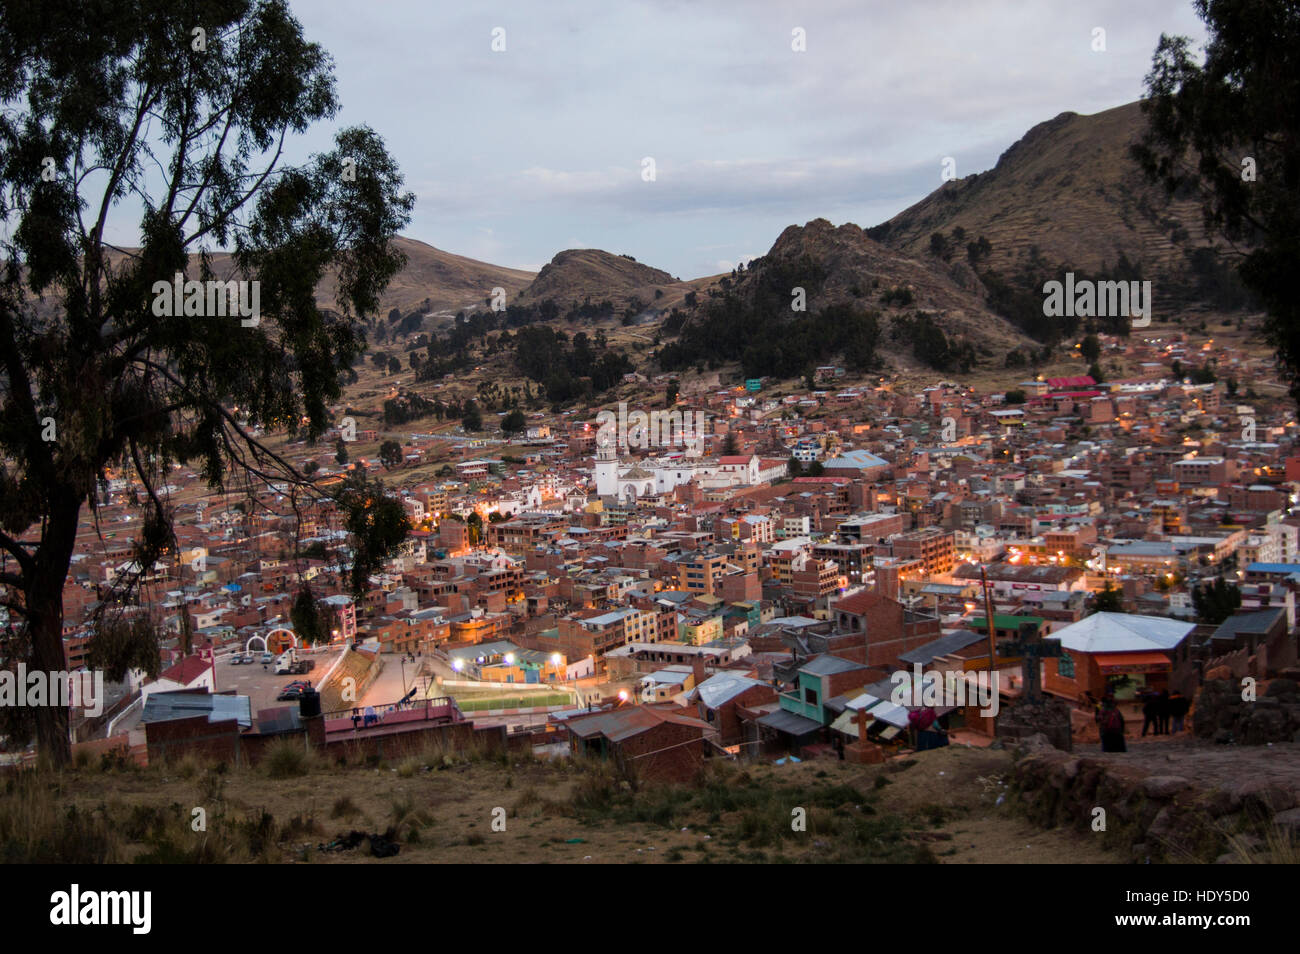 Copacabana, una città o un paese presso il lago Titicaca al confine con il Perù, dove le persone accorrono per turismo, sport acquatici e motivi religiosi Foto Stock